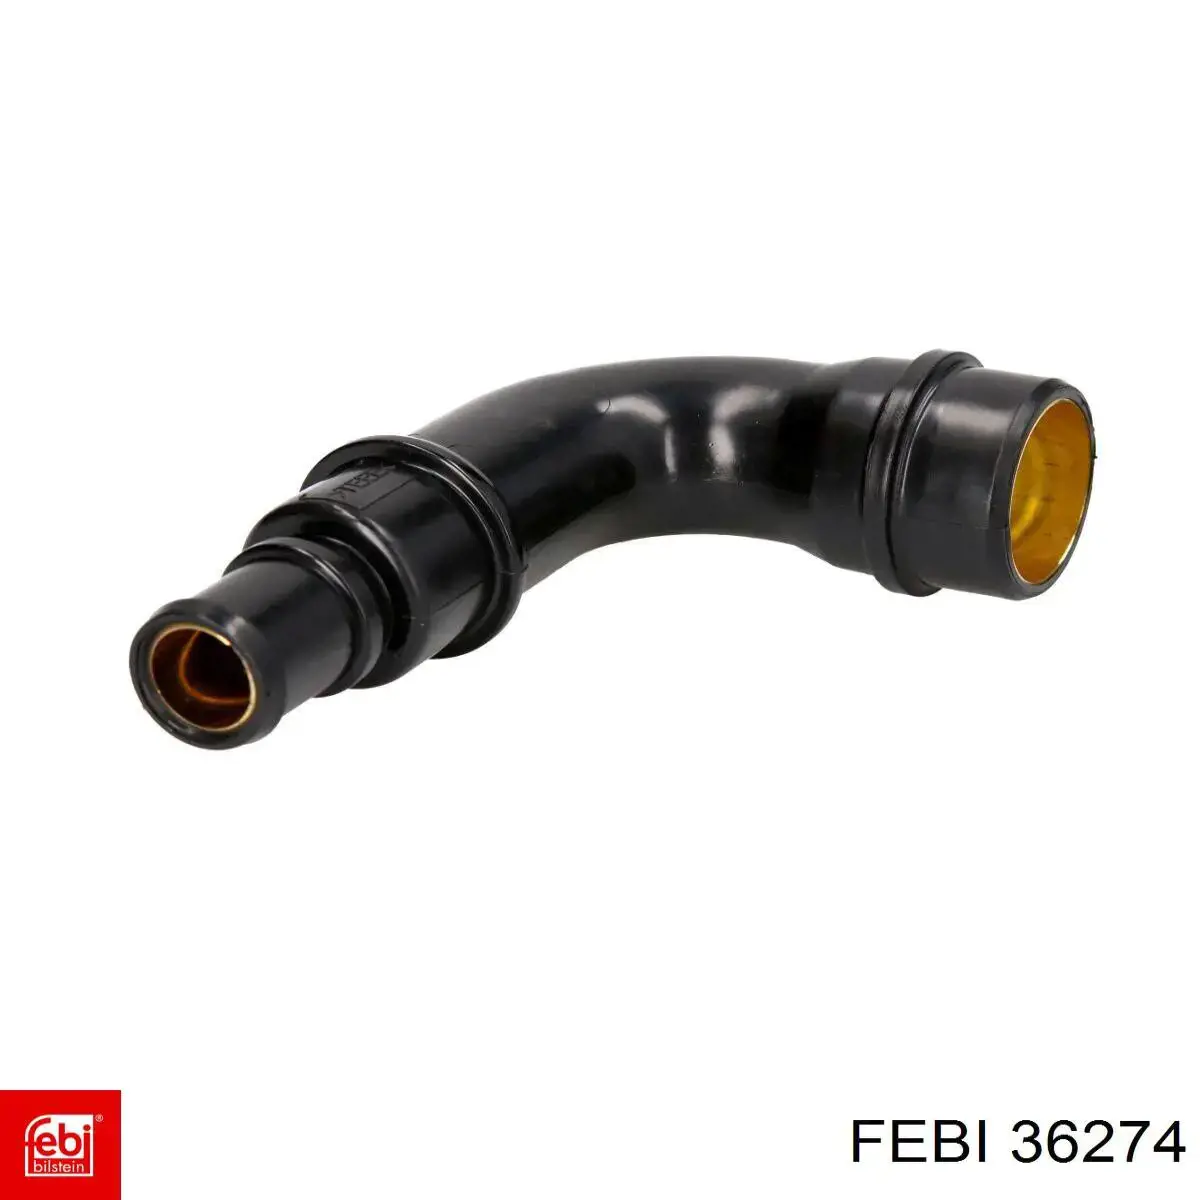 36274 Febi tubo de ventilacion del carter (separador de aceite)